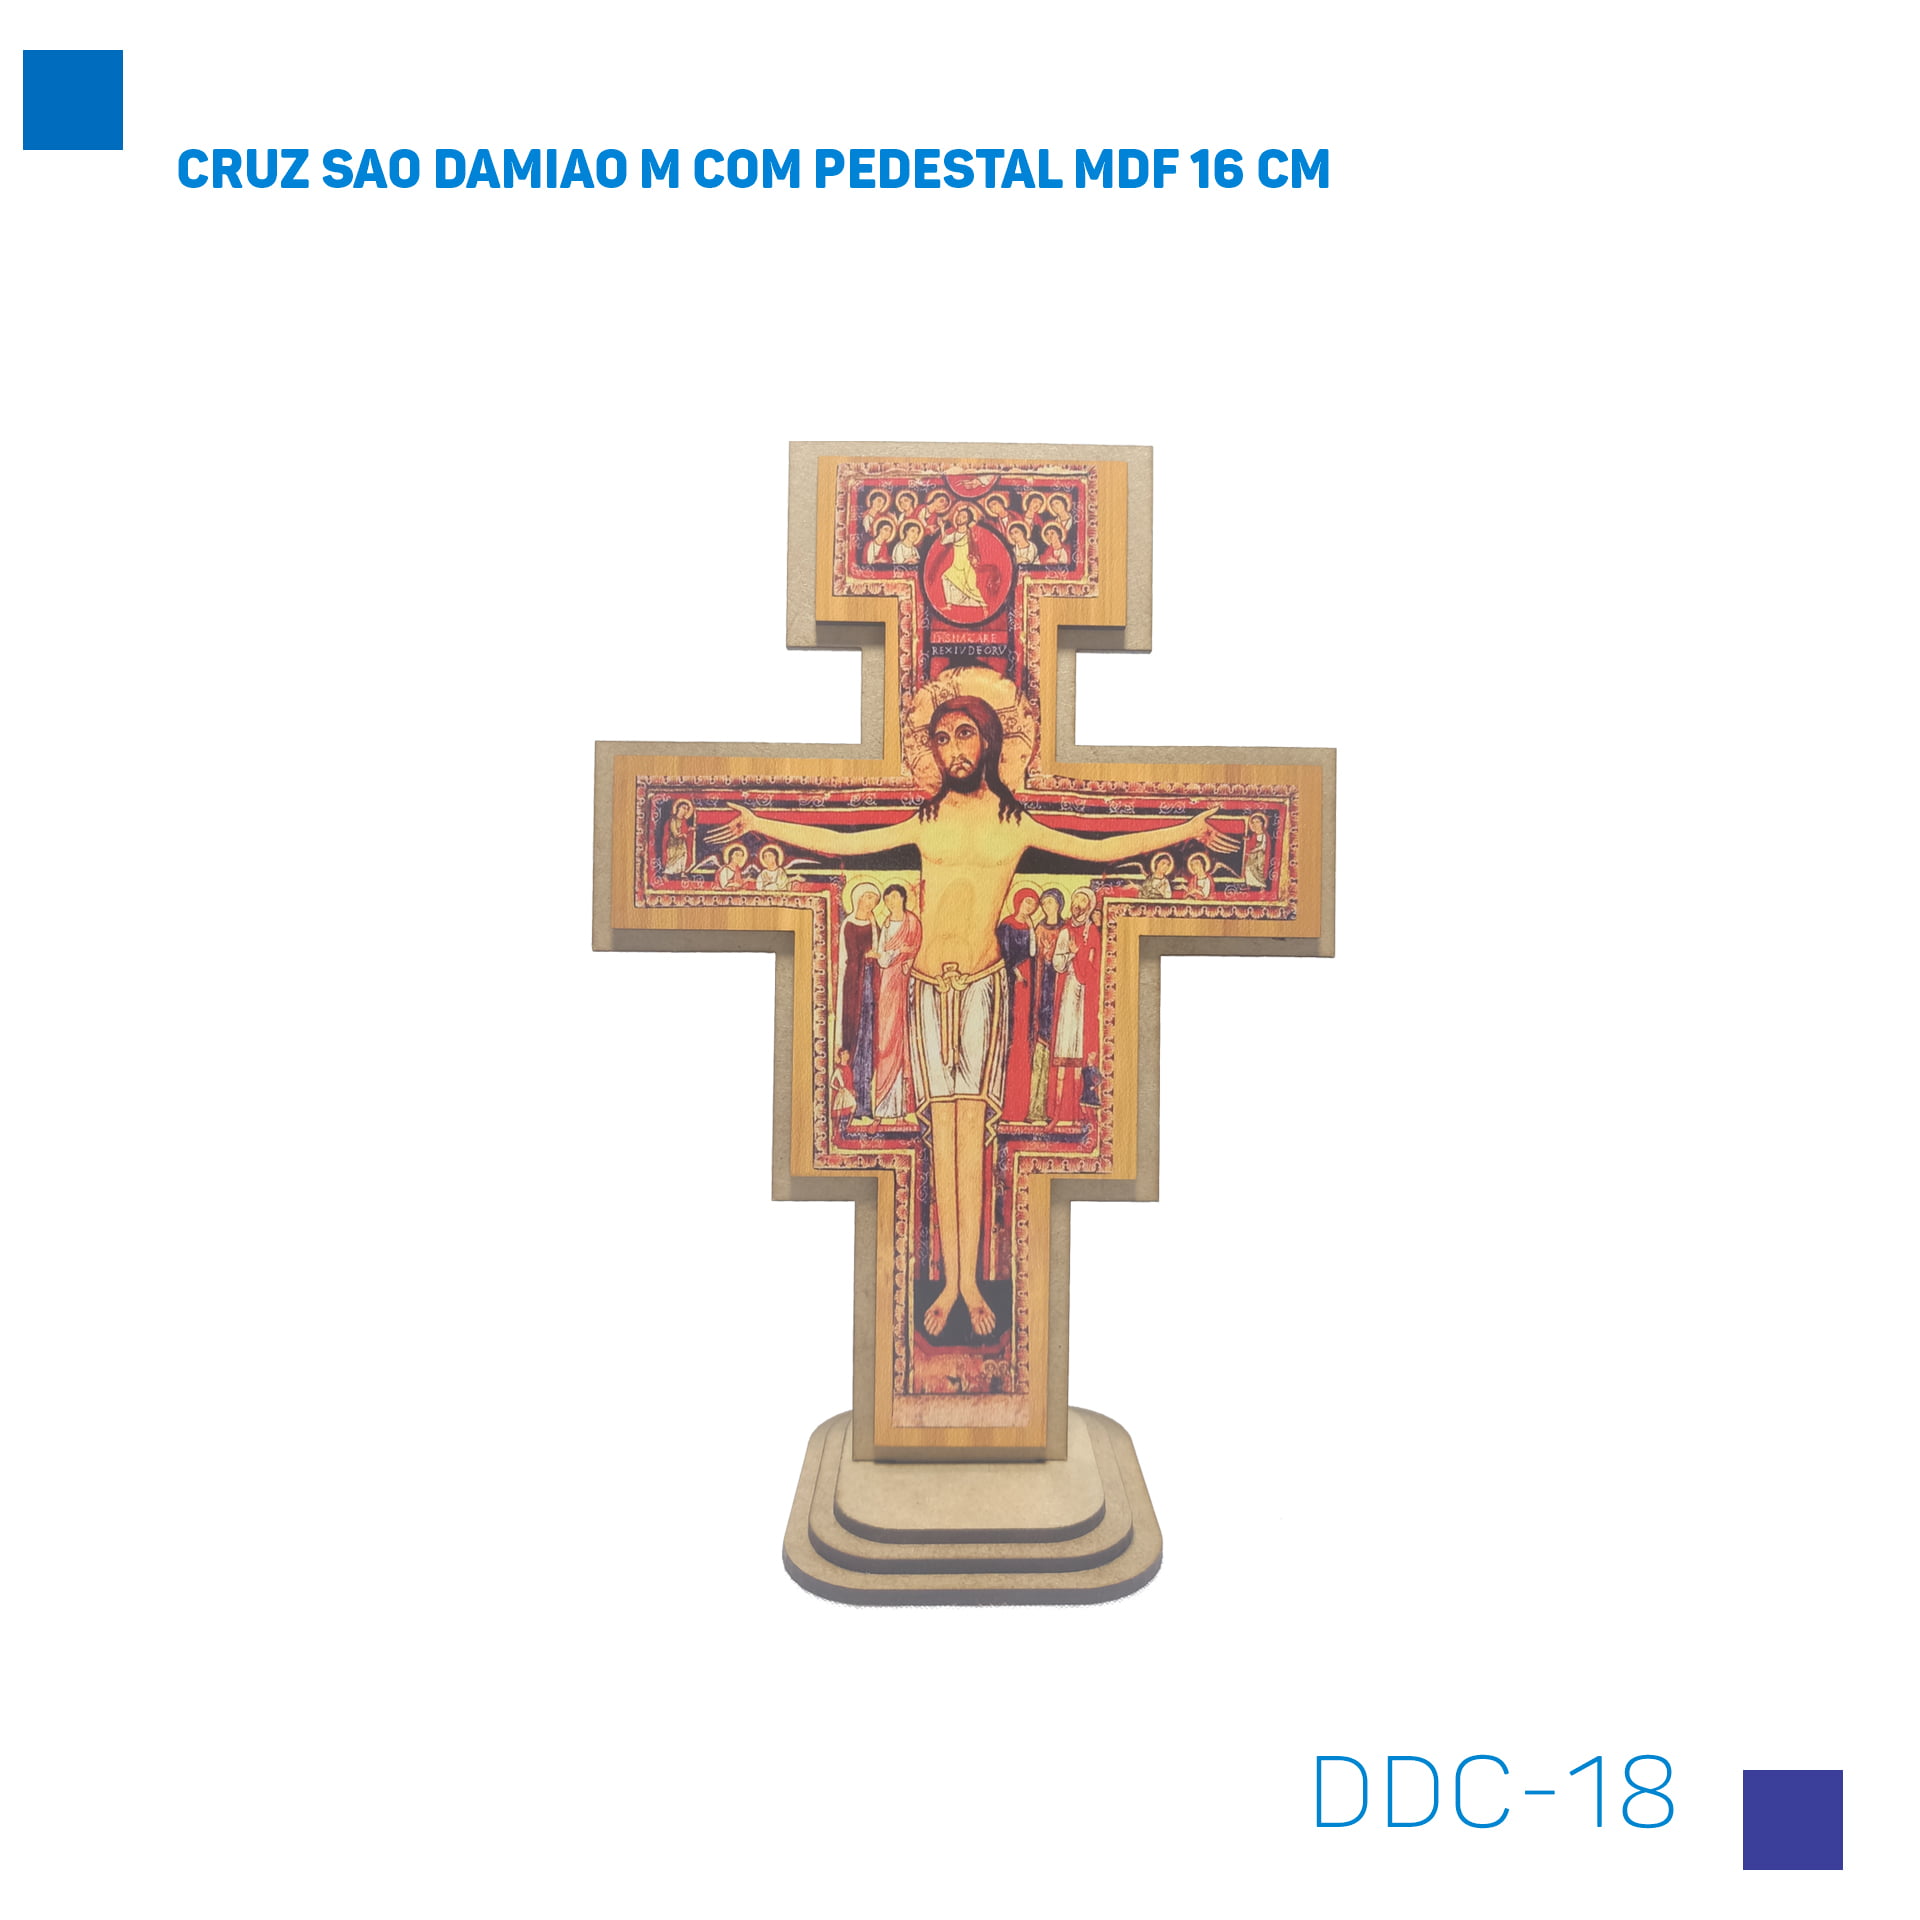 Bira Artigos Religiosos - CRUZ SAO DAMIAO M COM PEDESTAL MDF 16 CM Cod. DDC-18